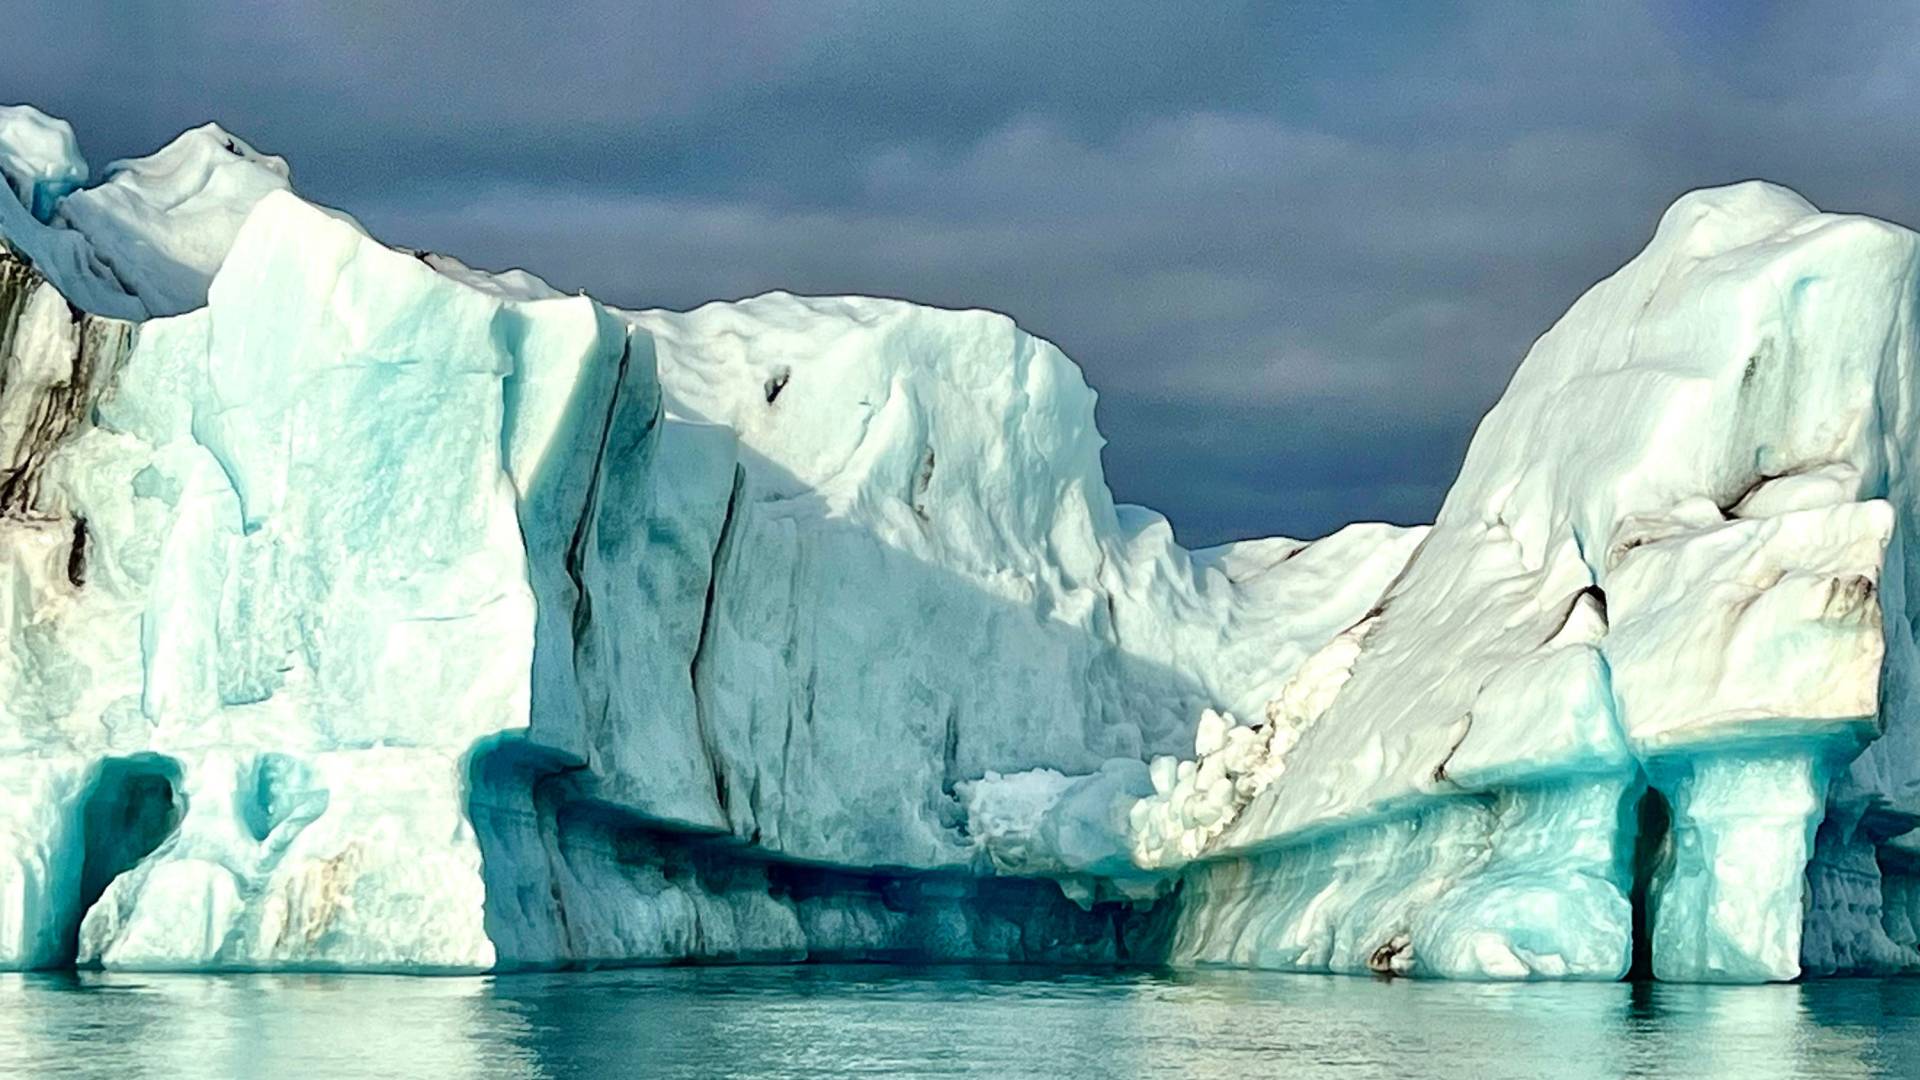 An iceberg calved off a retreating glacier floats in Jökulsárlón Glacial Lagoon.